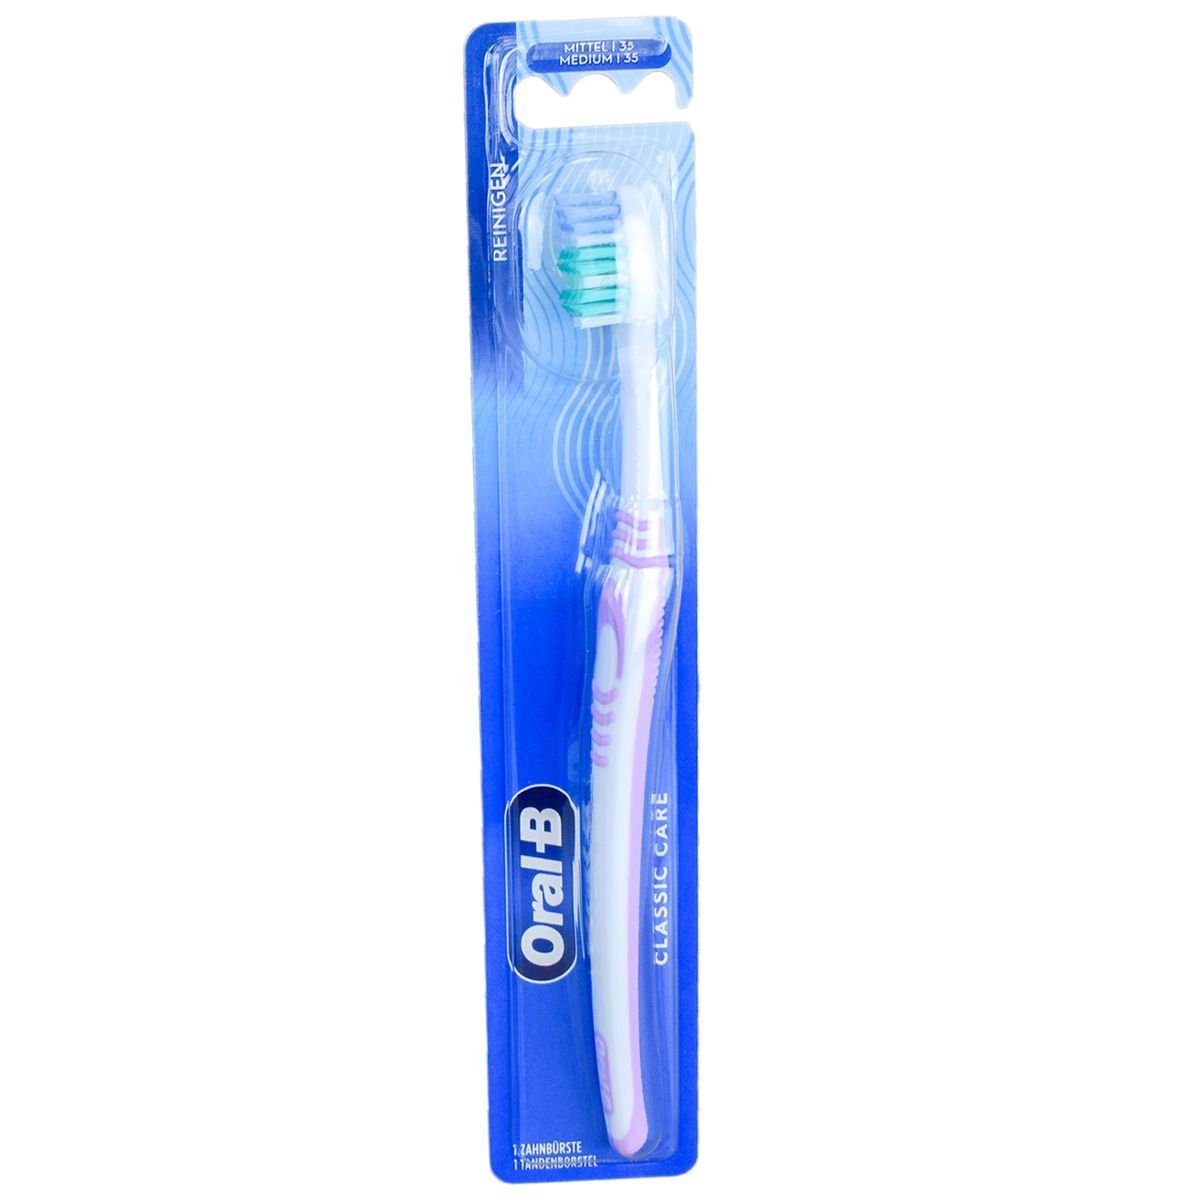 Marabellas Shop Zahnbürste Oral-B Classic Care Handzahnbürste 35 mittel mit Kurzkopf Zahnbürste, mit ergonomischen Griff